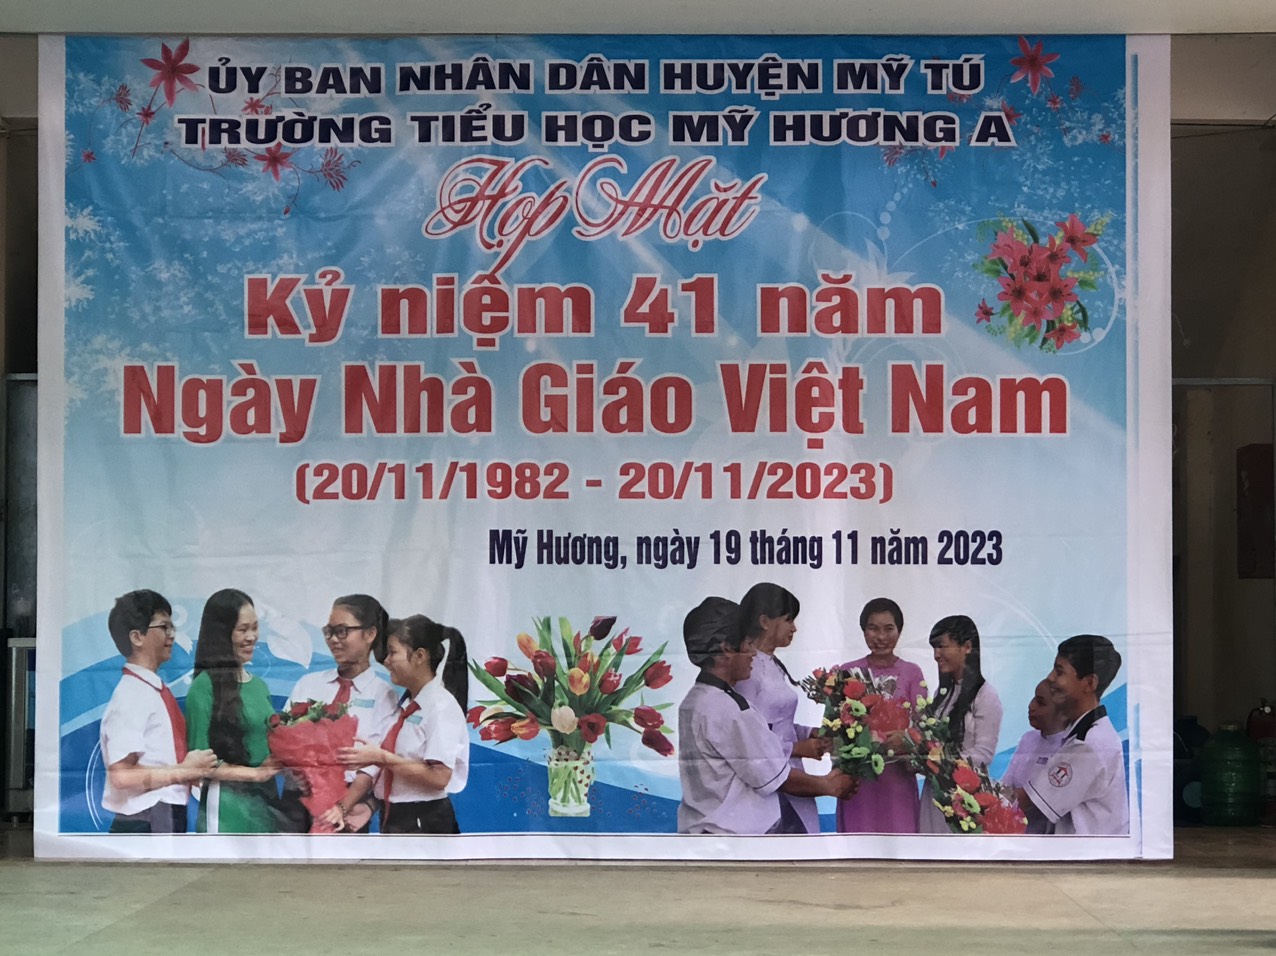 Trường tiểu học Mỹ Hương A tổ chức họp mặt ngày nhà giáo Việt Nam 20/11/2023